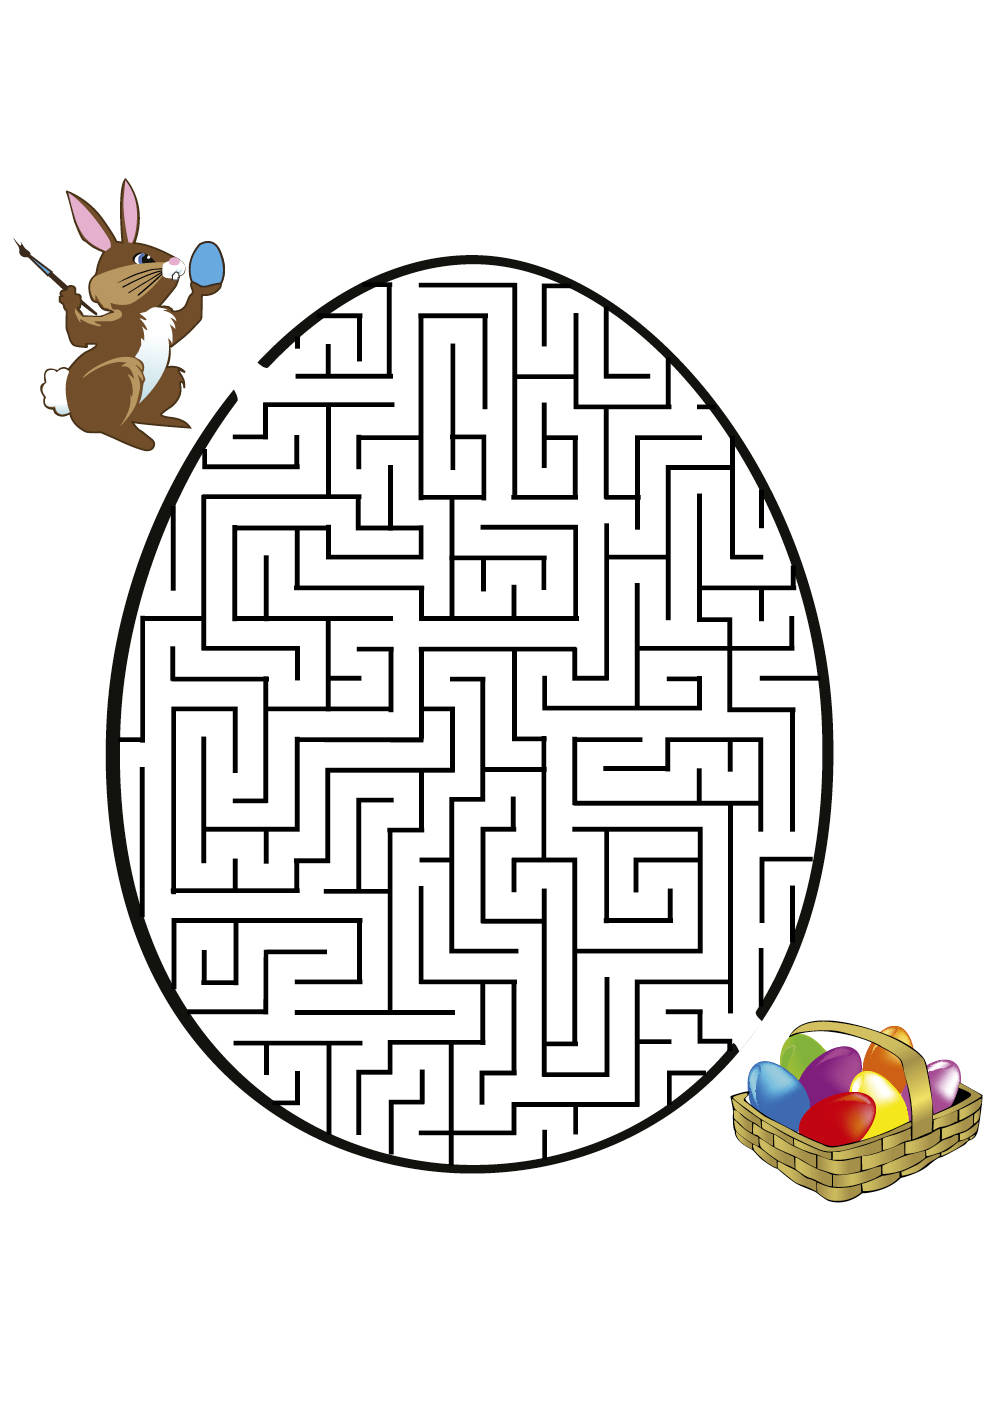 Um complicado labirinto temático da Páscoa com um coelhinho giro e um ovo colorido